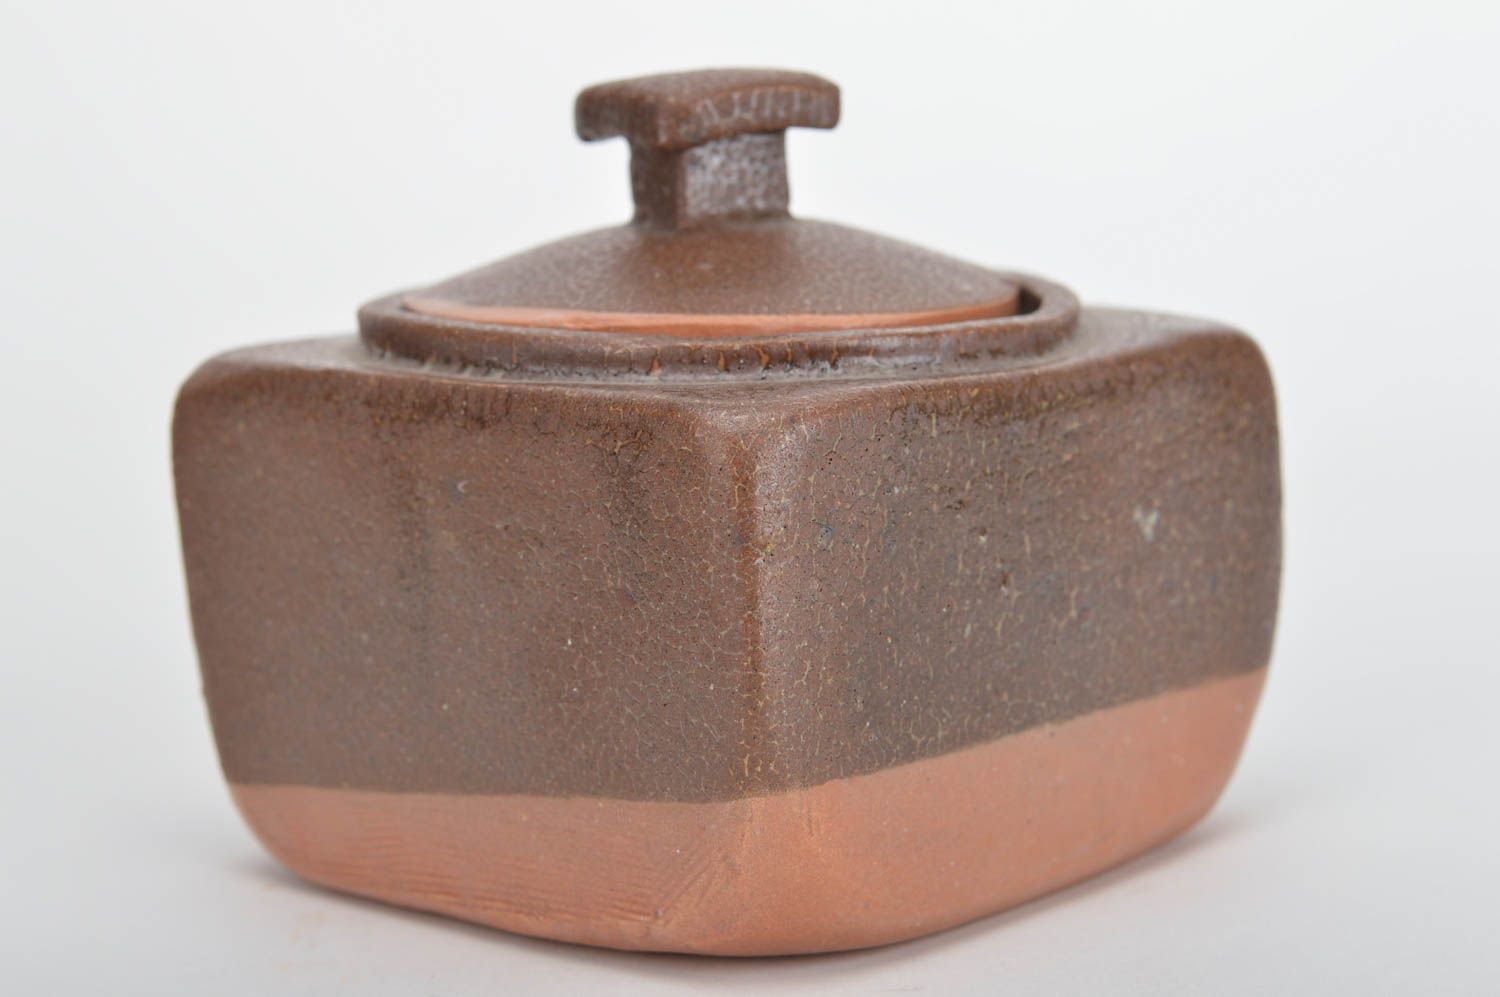 Keramik Zuckerdose mit Deckel braun klein aus rotem Ton schön handgemacht foto 1